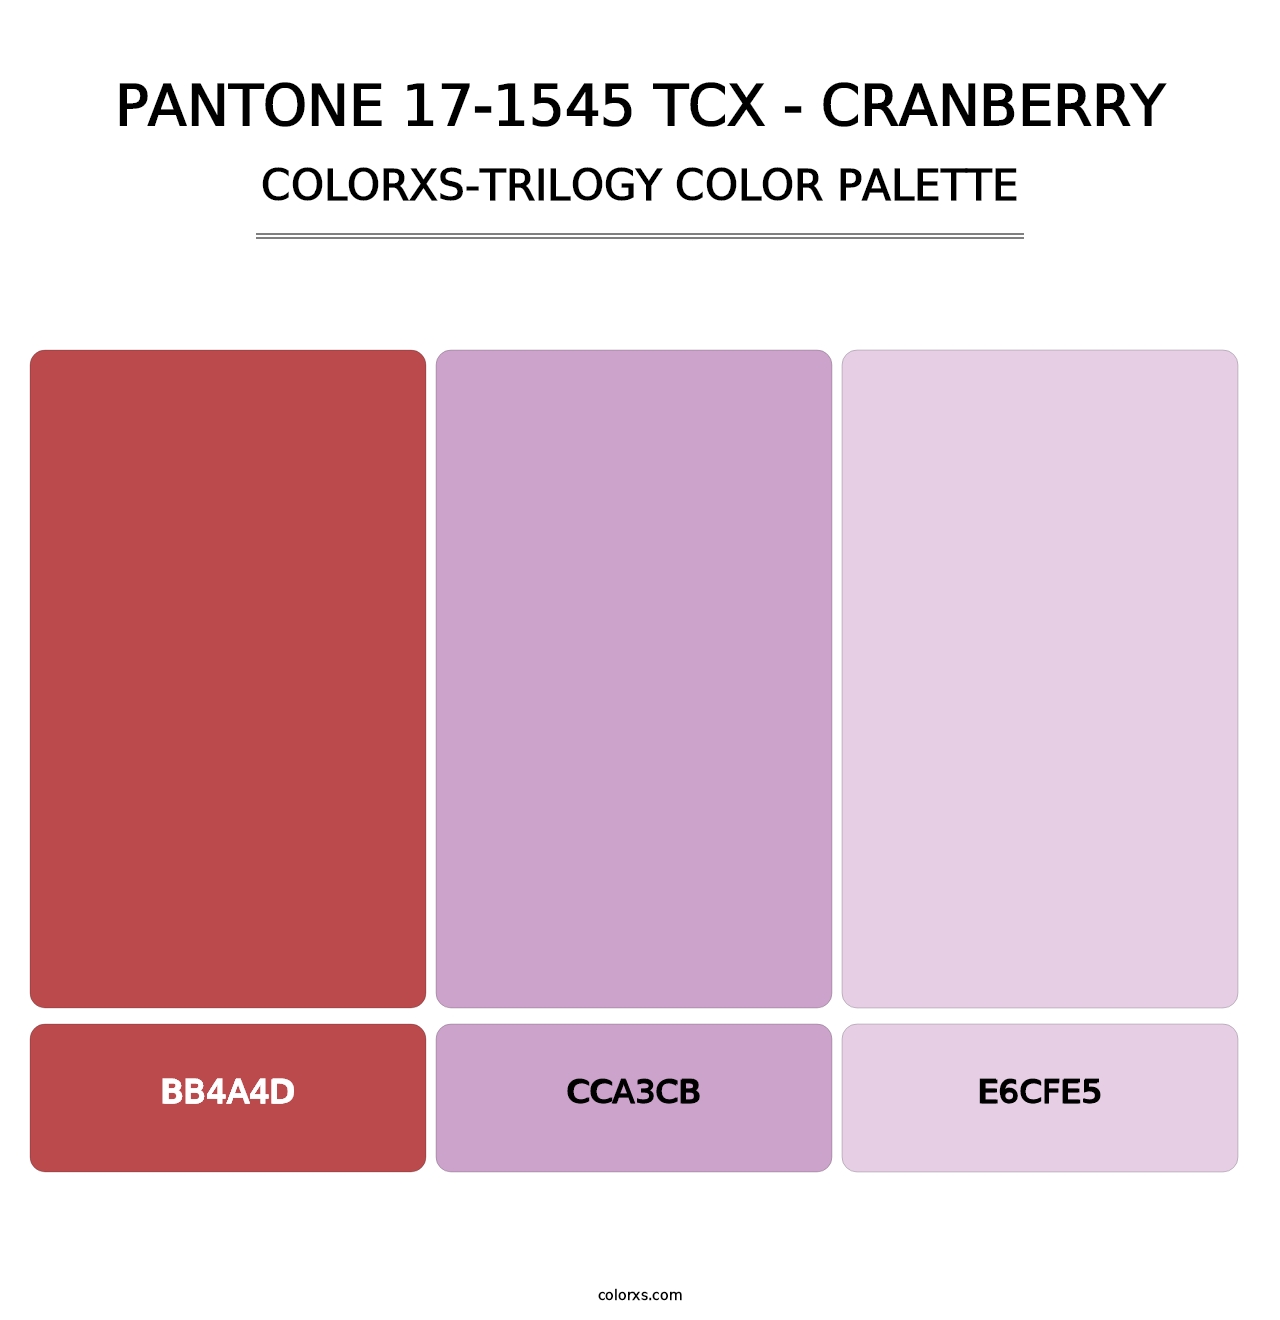 PANTONE 17-1545 TCX - Cranberry - Colorxs Trilogy Palette